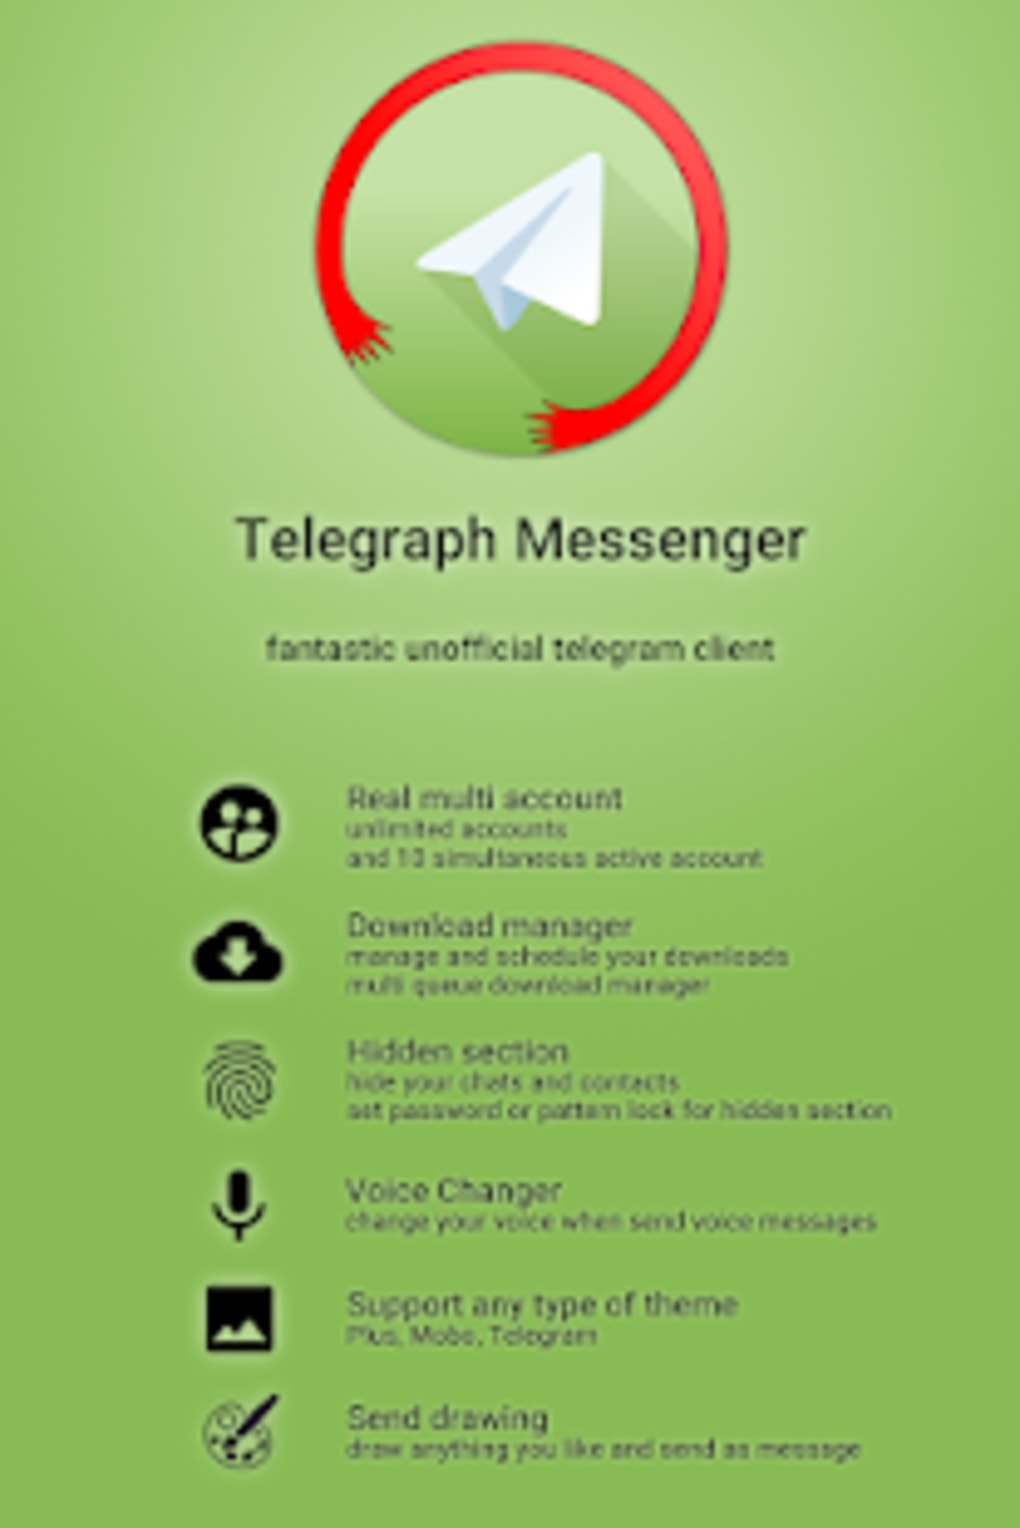 Скачать мессенджер телеграмм для андроид бесплатно на русском языке фото 46